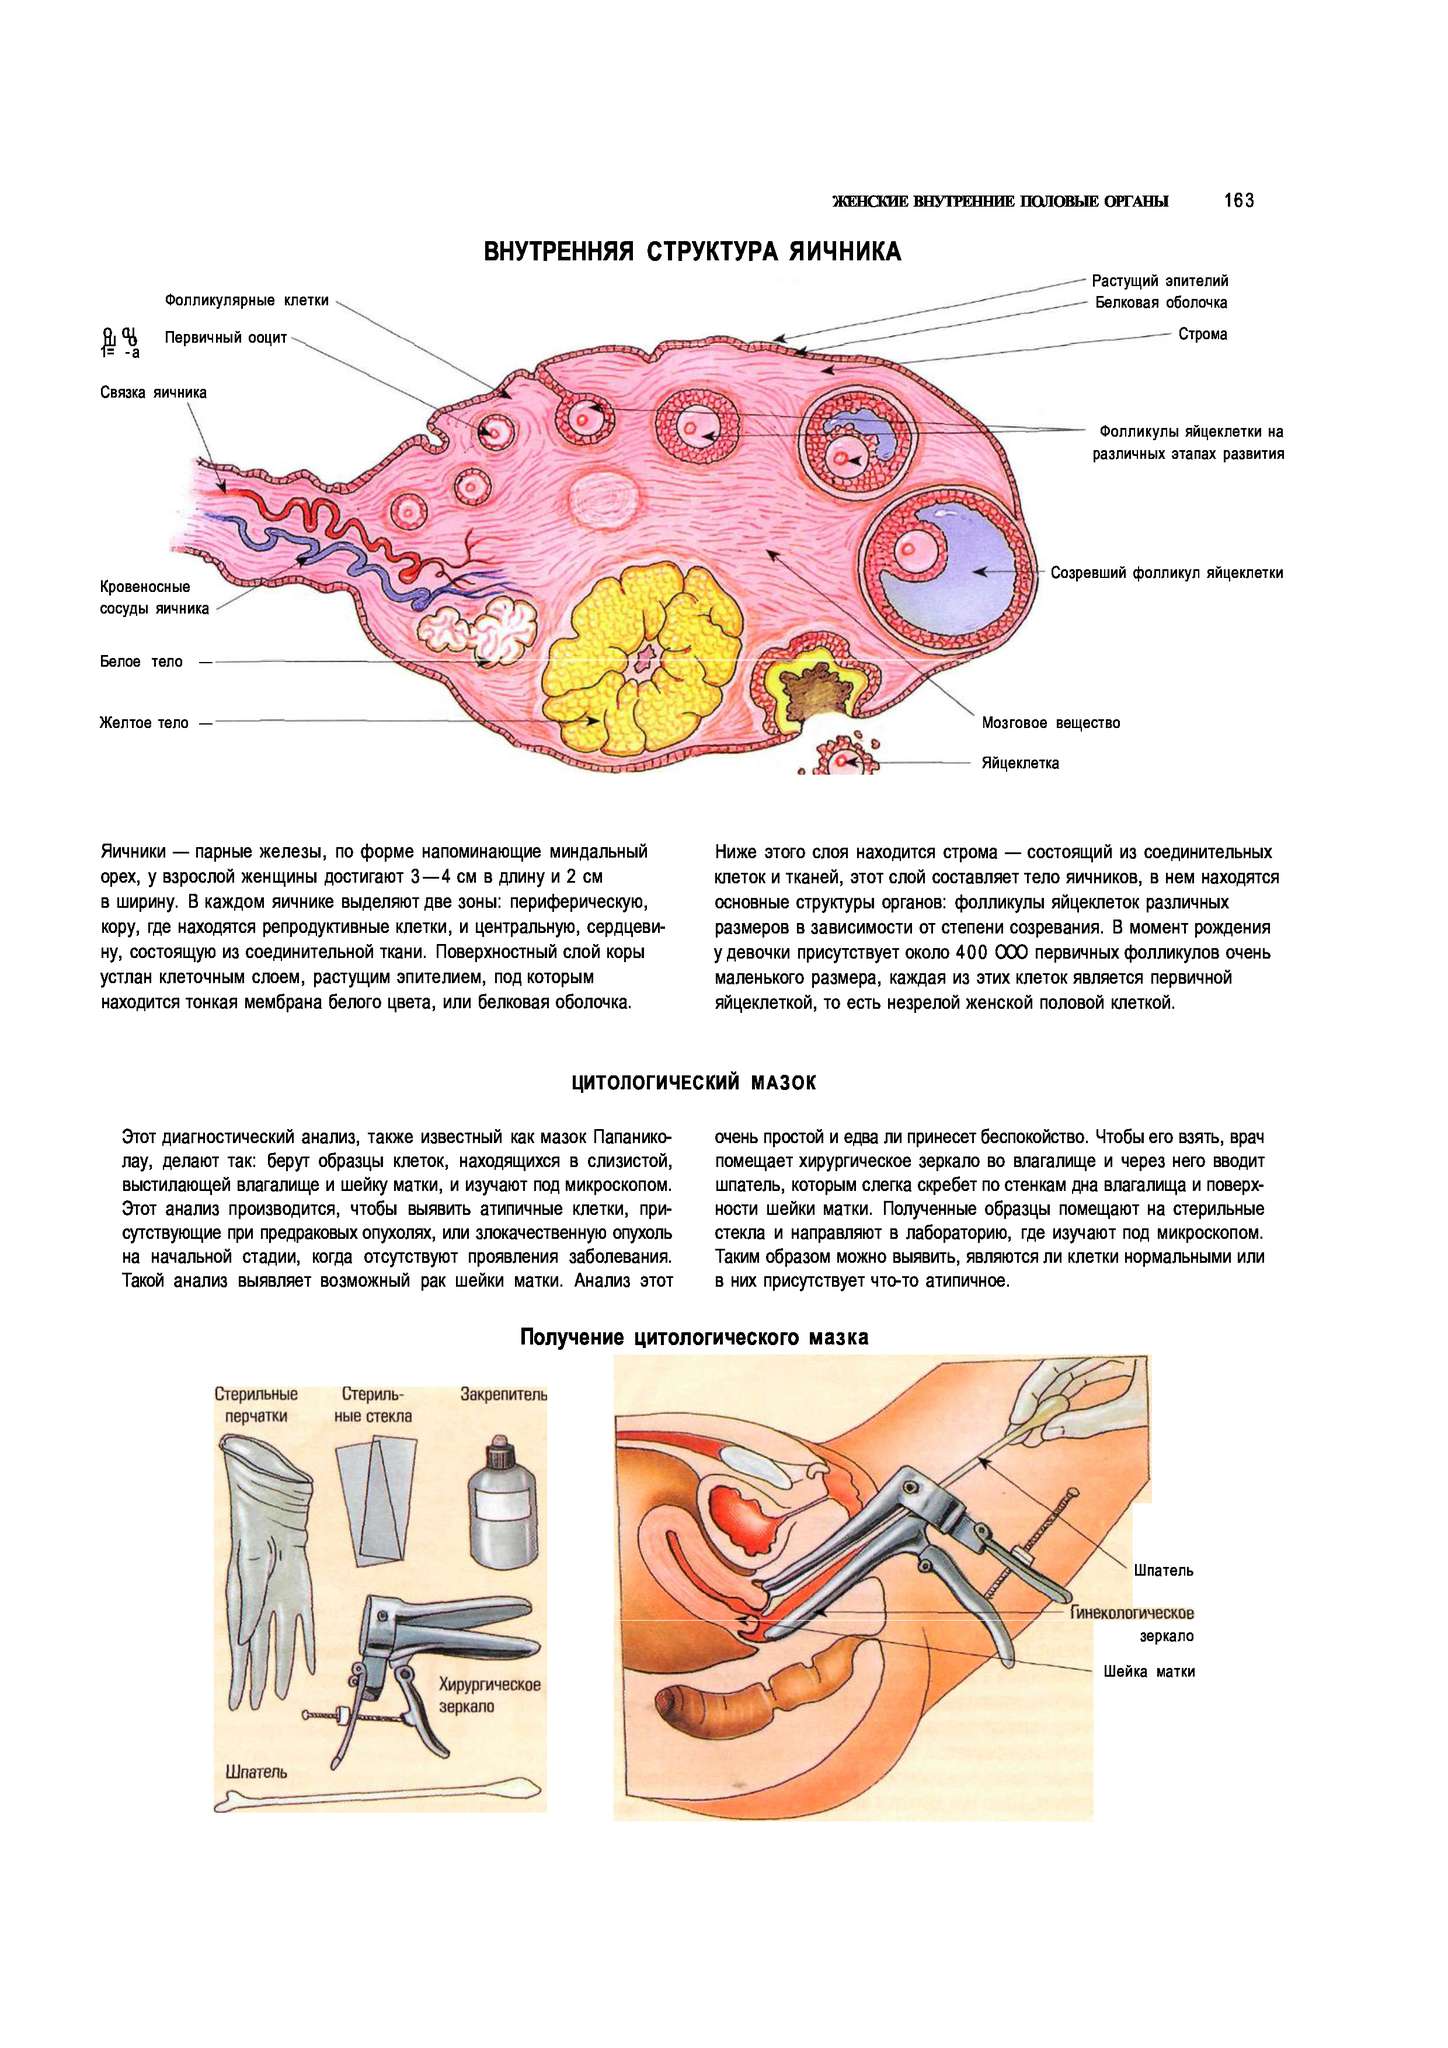 Яичник на латыни. Яичники расположение строение функции. Женская половая система яичник анатомия строение. Внутреннее строение яичника анатомия. Женские половые органы анатомия яичник.